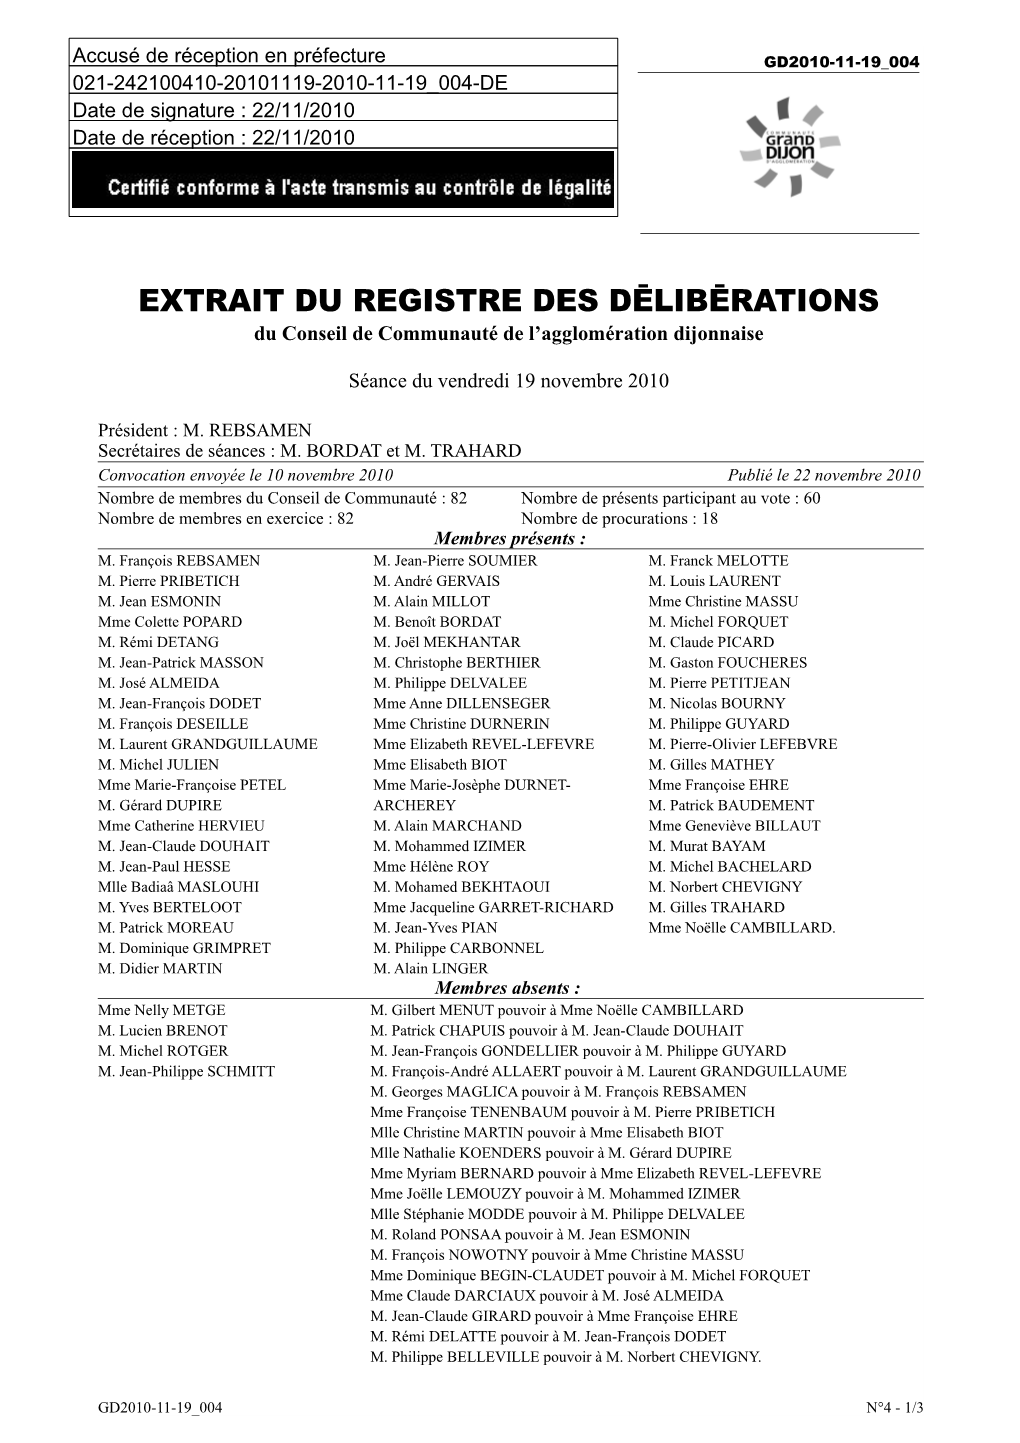 EXTRAIT DU REGISTRE DES DĒLIBĒRATIONS Du Conseil De Communauté De L’Agglomération Dijonnaise